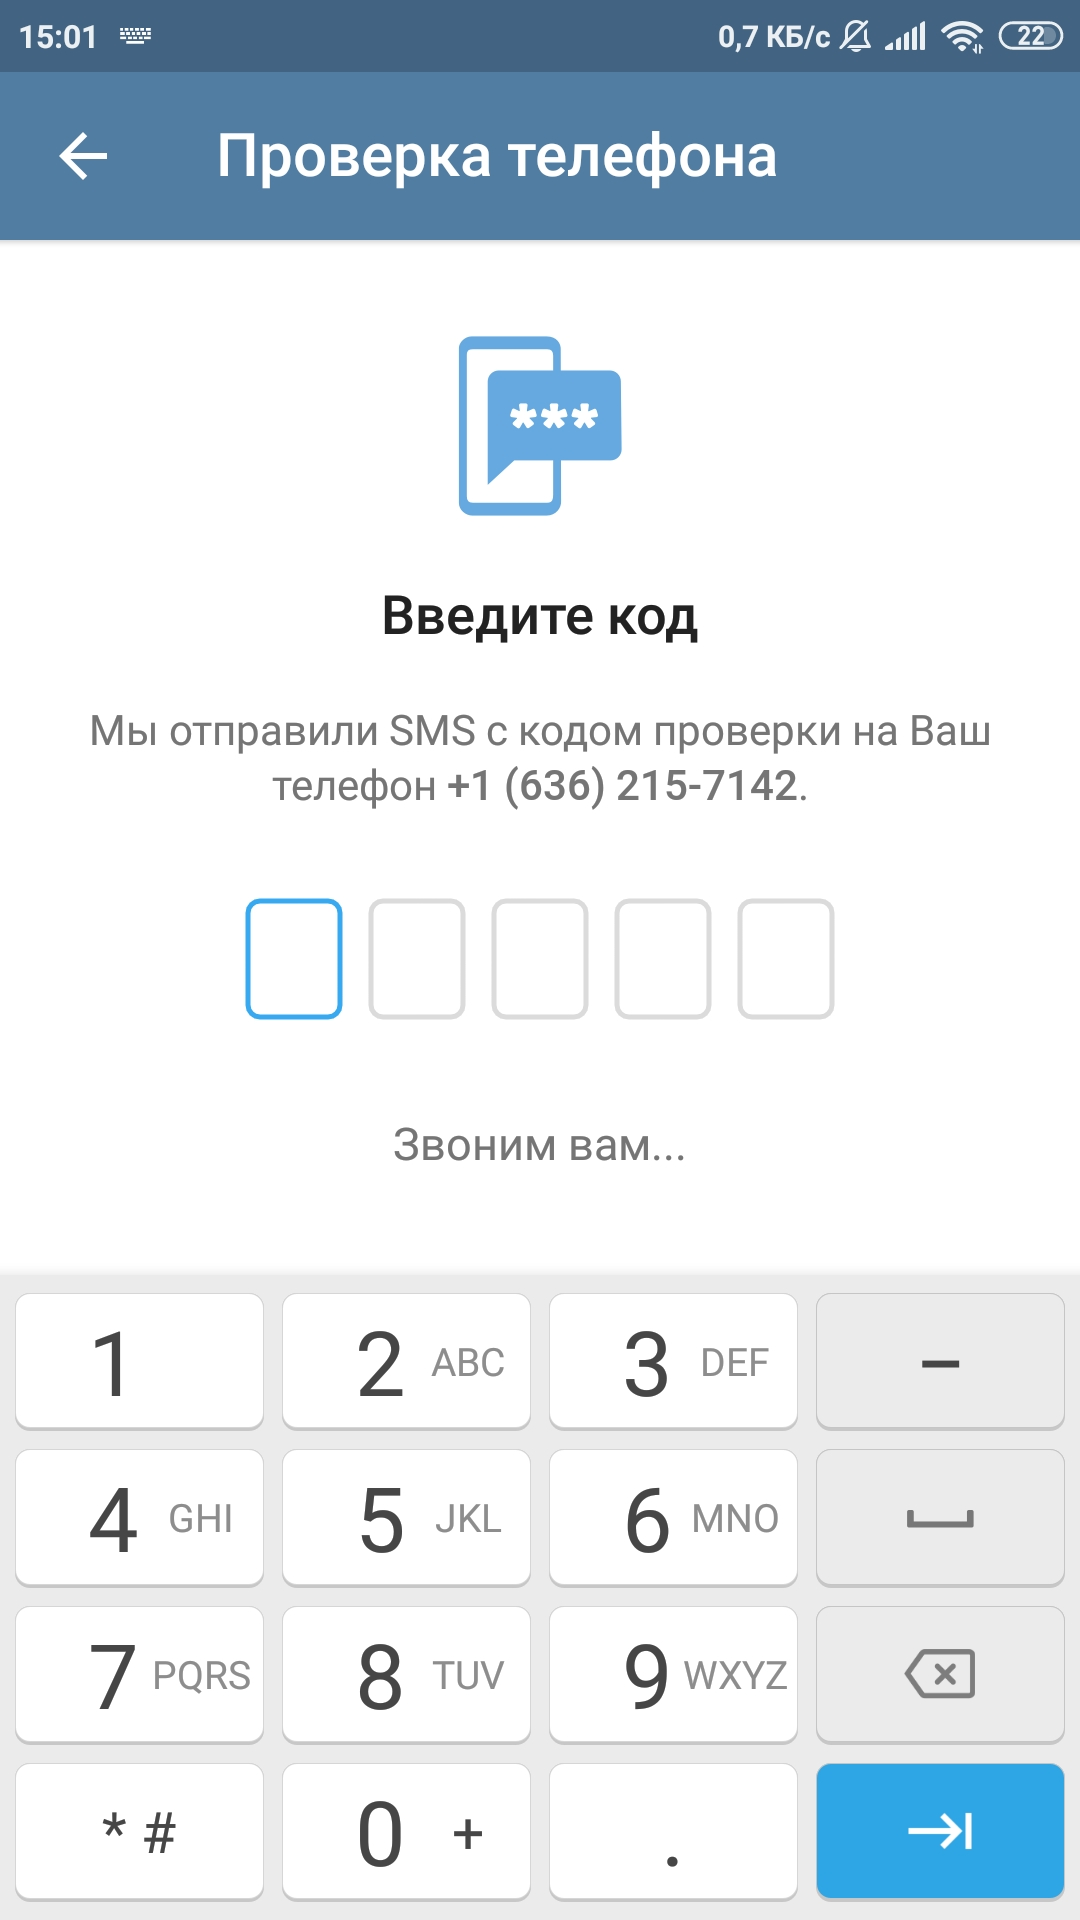 Бесплатный номер телефона виртуальный для телеграма. Виртуальный номер для телеграмма. Виртуальный номер для телеграм. Номера для регистрации в телеграмме. Одноразовые номера для тг.